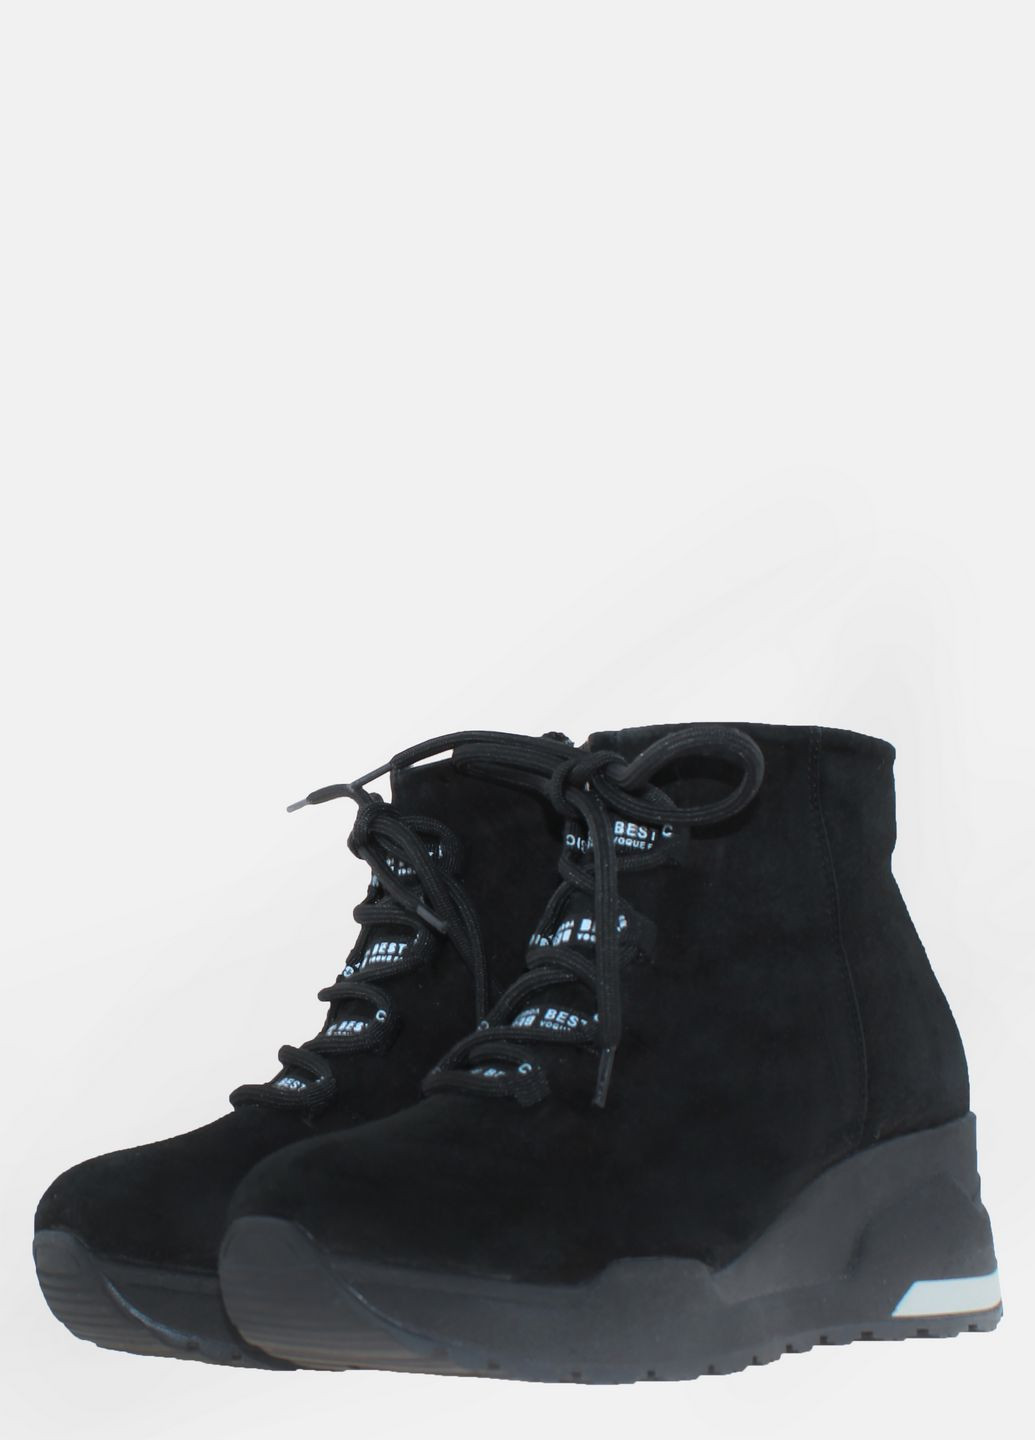 Зимние ботинки r1535-11 черный Carvallio из натуральной замши